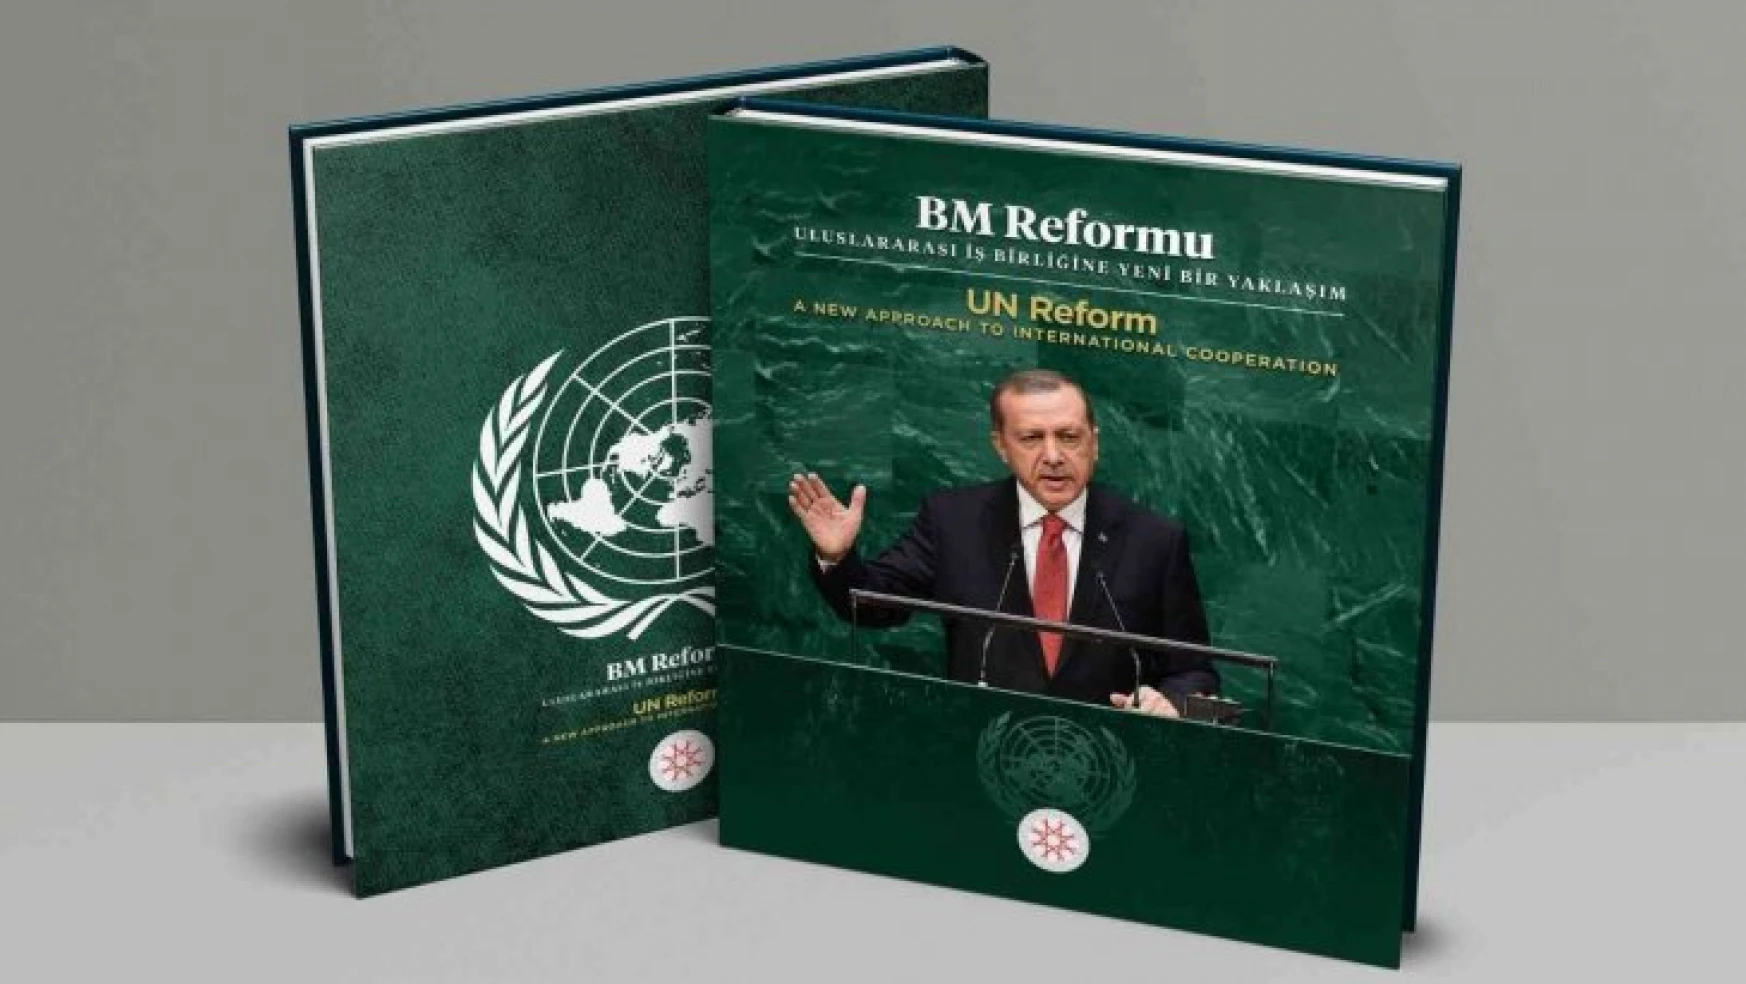 Türkiye'nin Birleşmiş Milletler Reformuna yönelik tezleri kitaplaştırıldı